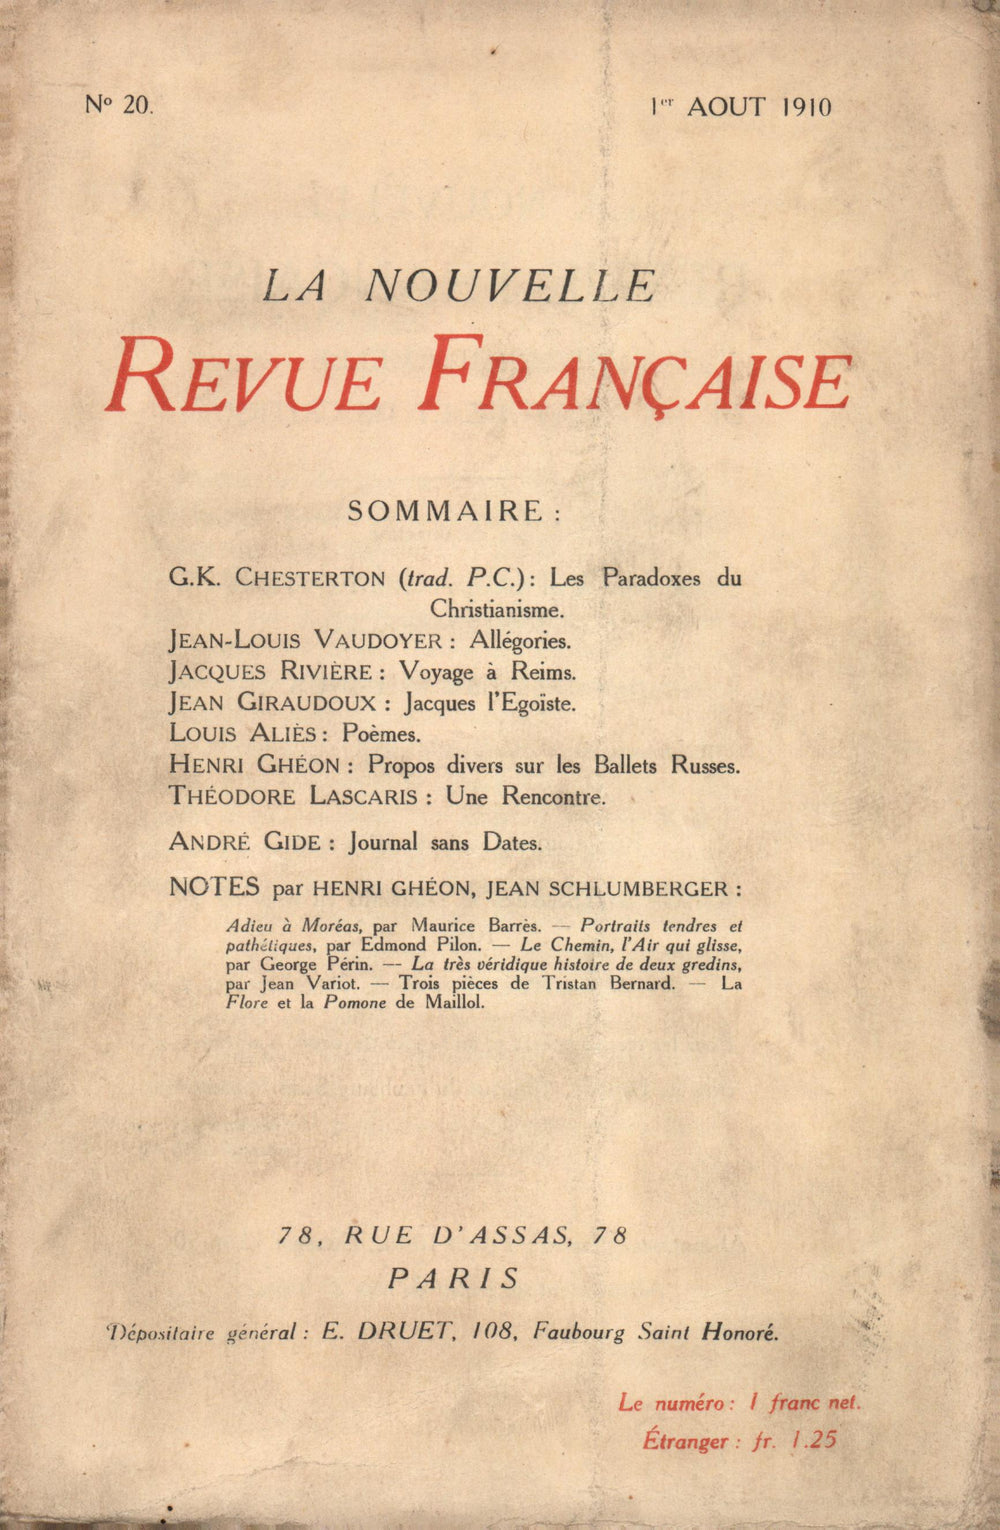 La Nouvelle Revue Française N' 20 (Aoűt 1910)